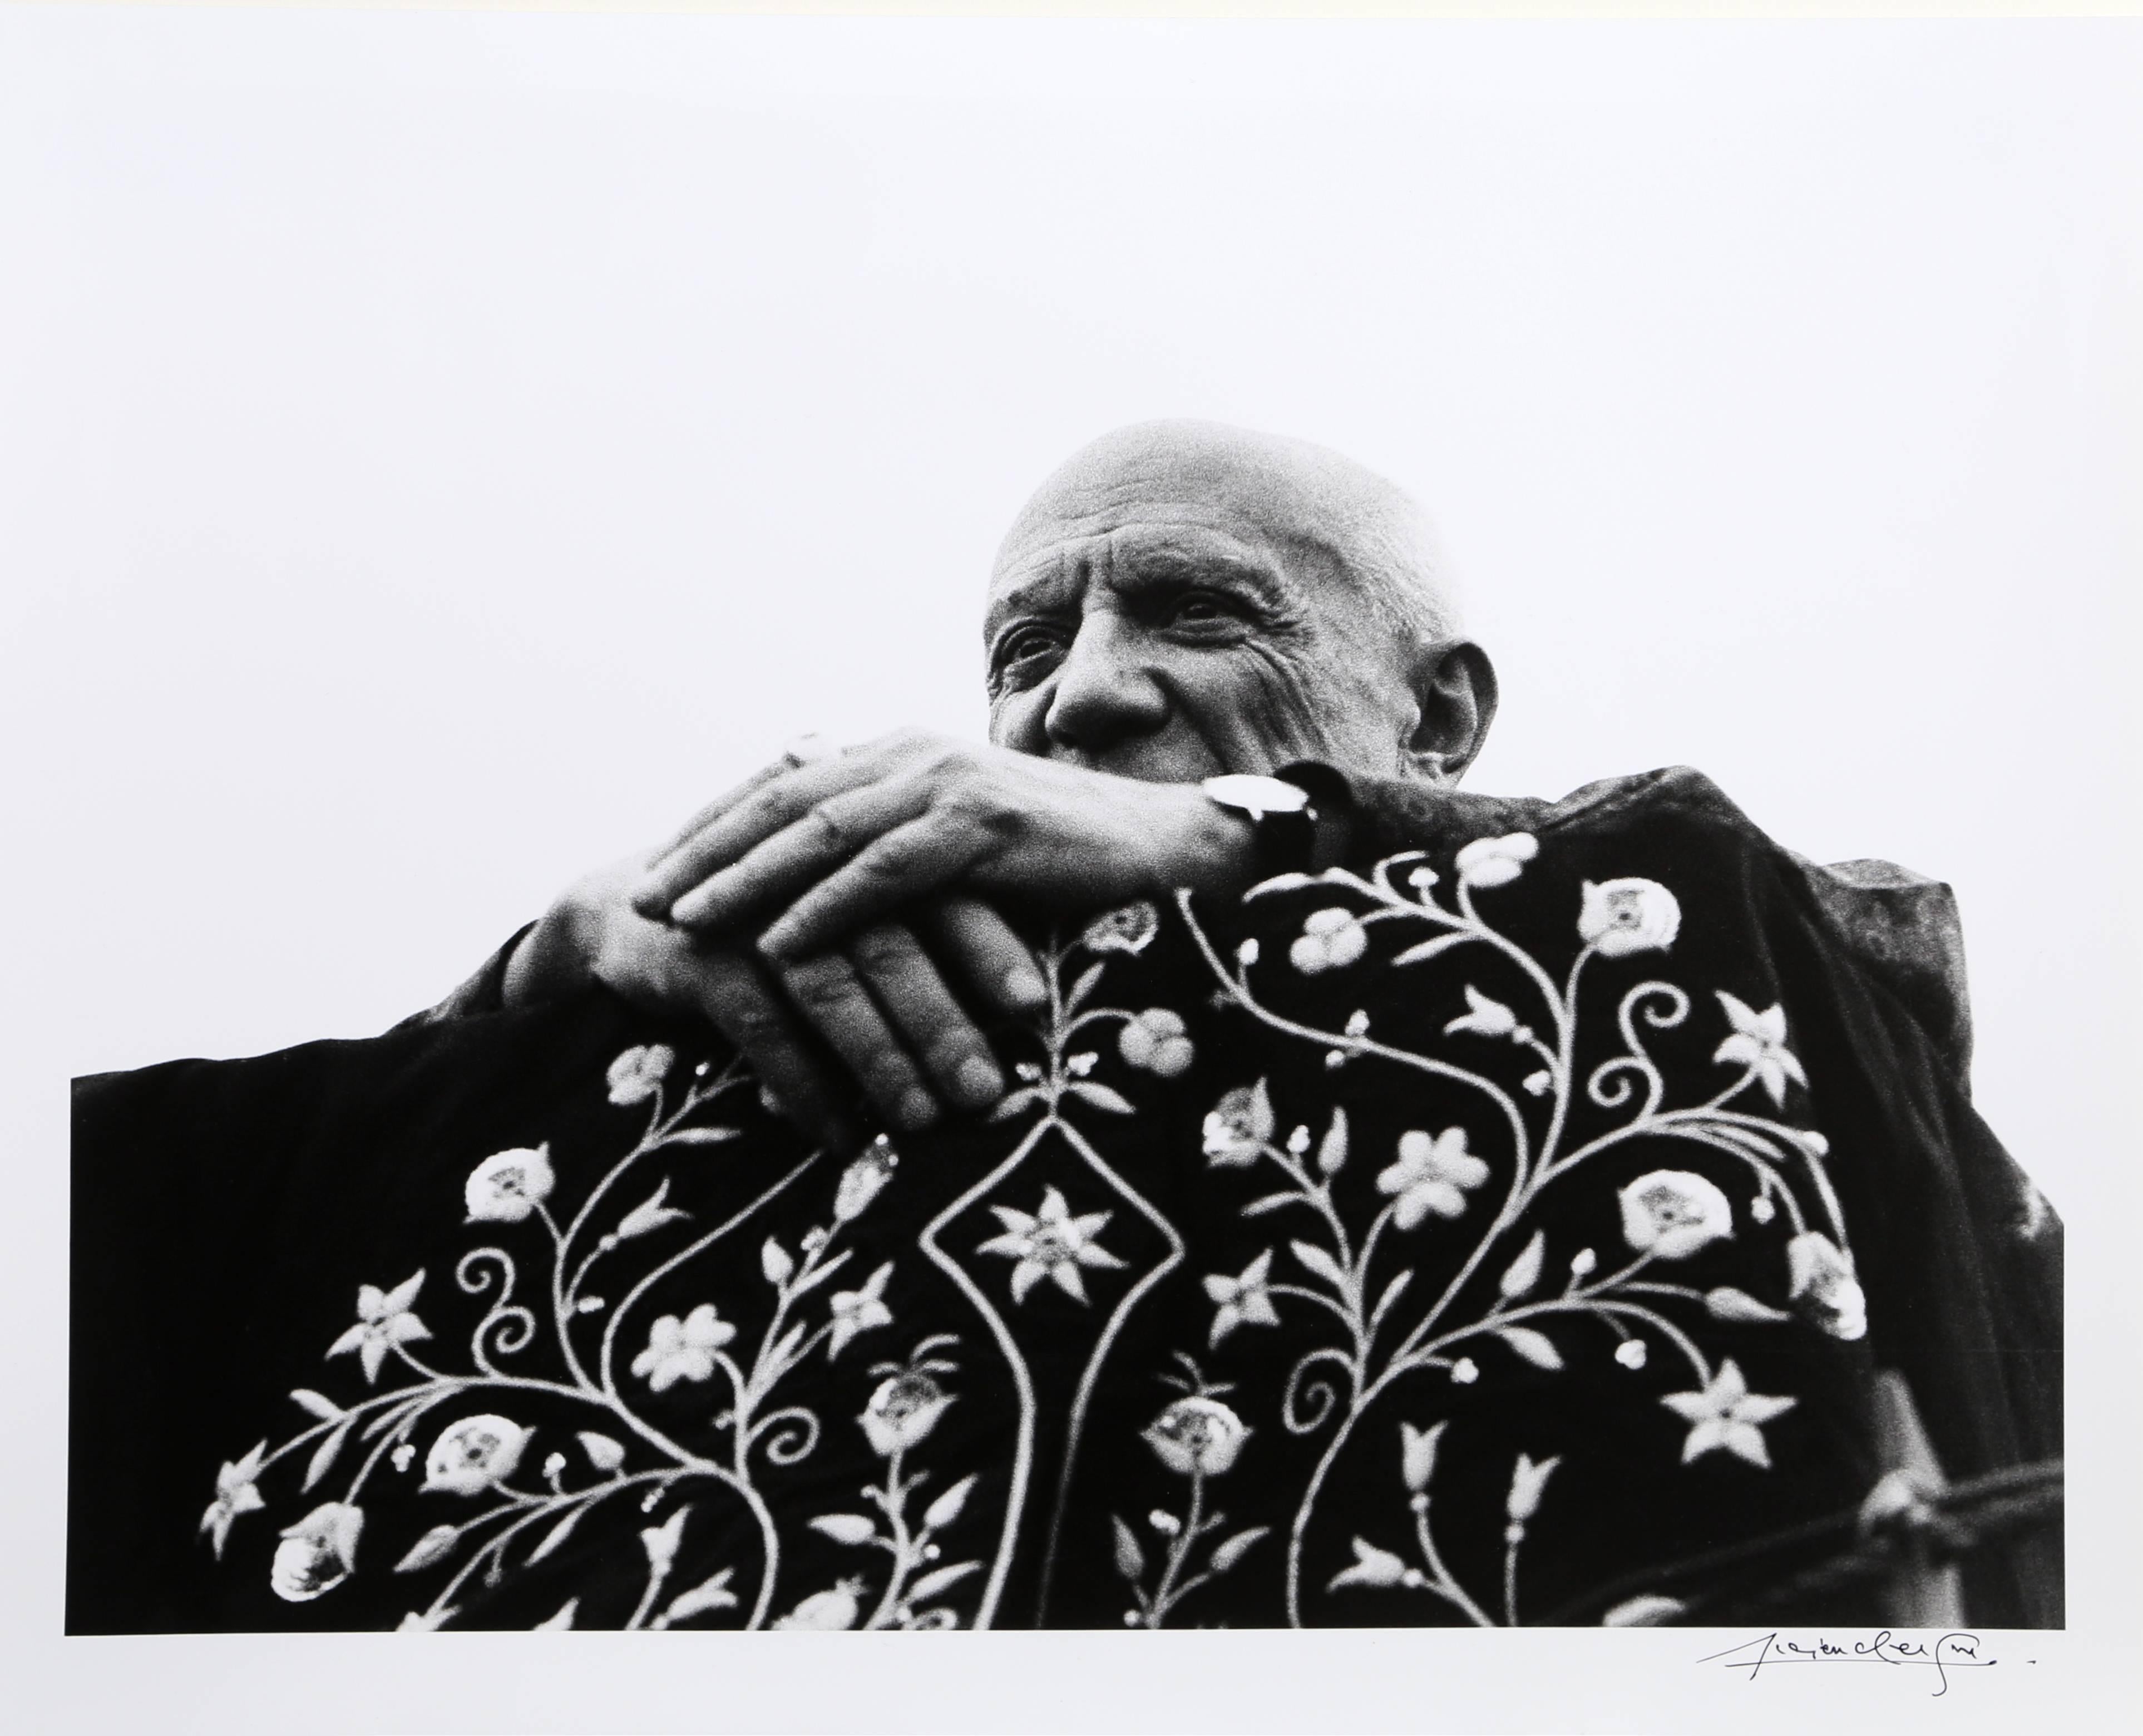 Lucien Clergue Portrait Photograph - Picasso Preside la Corrida - Frejus, 1962